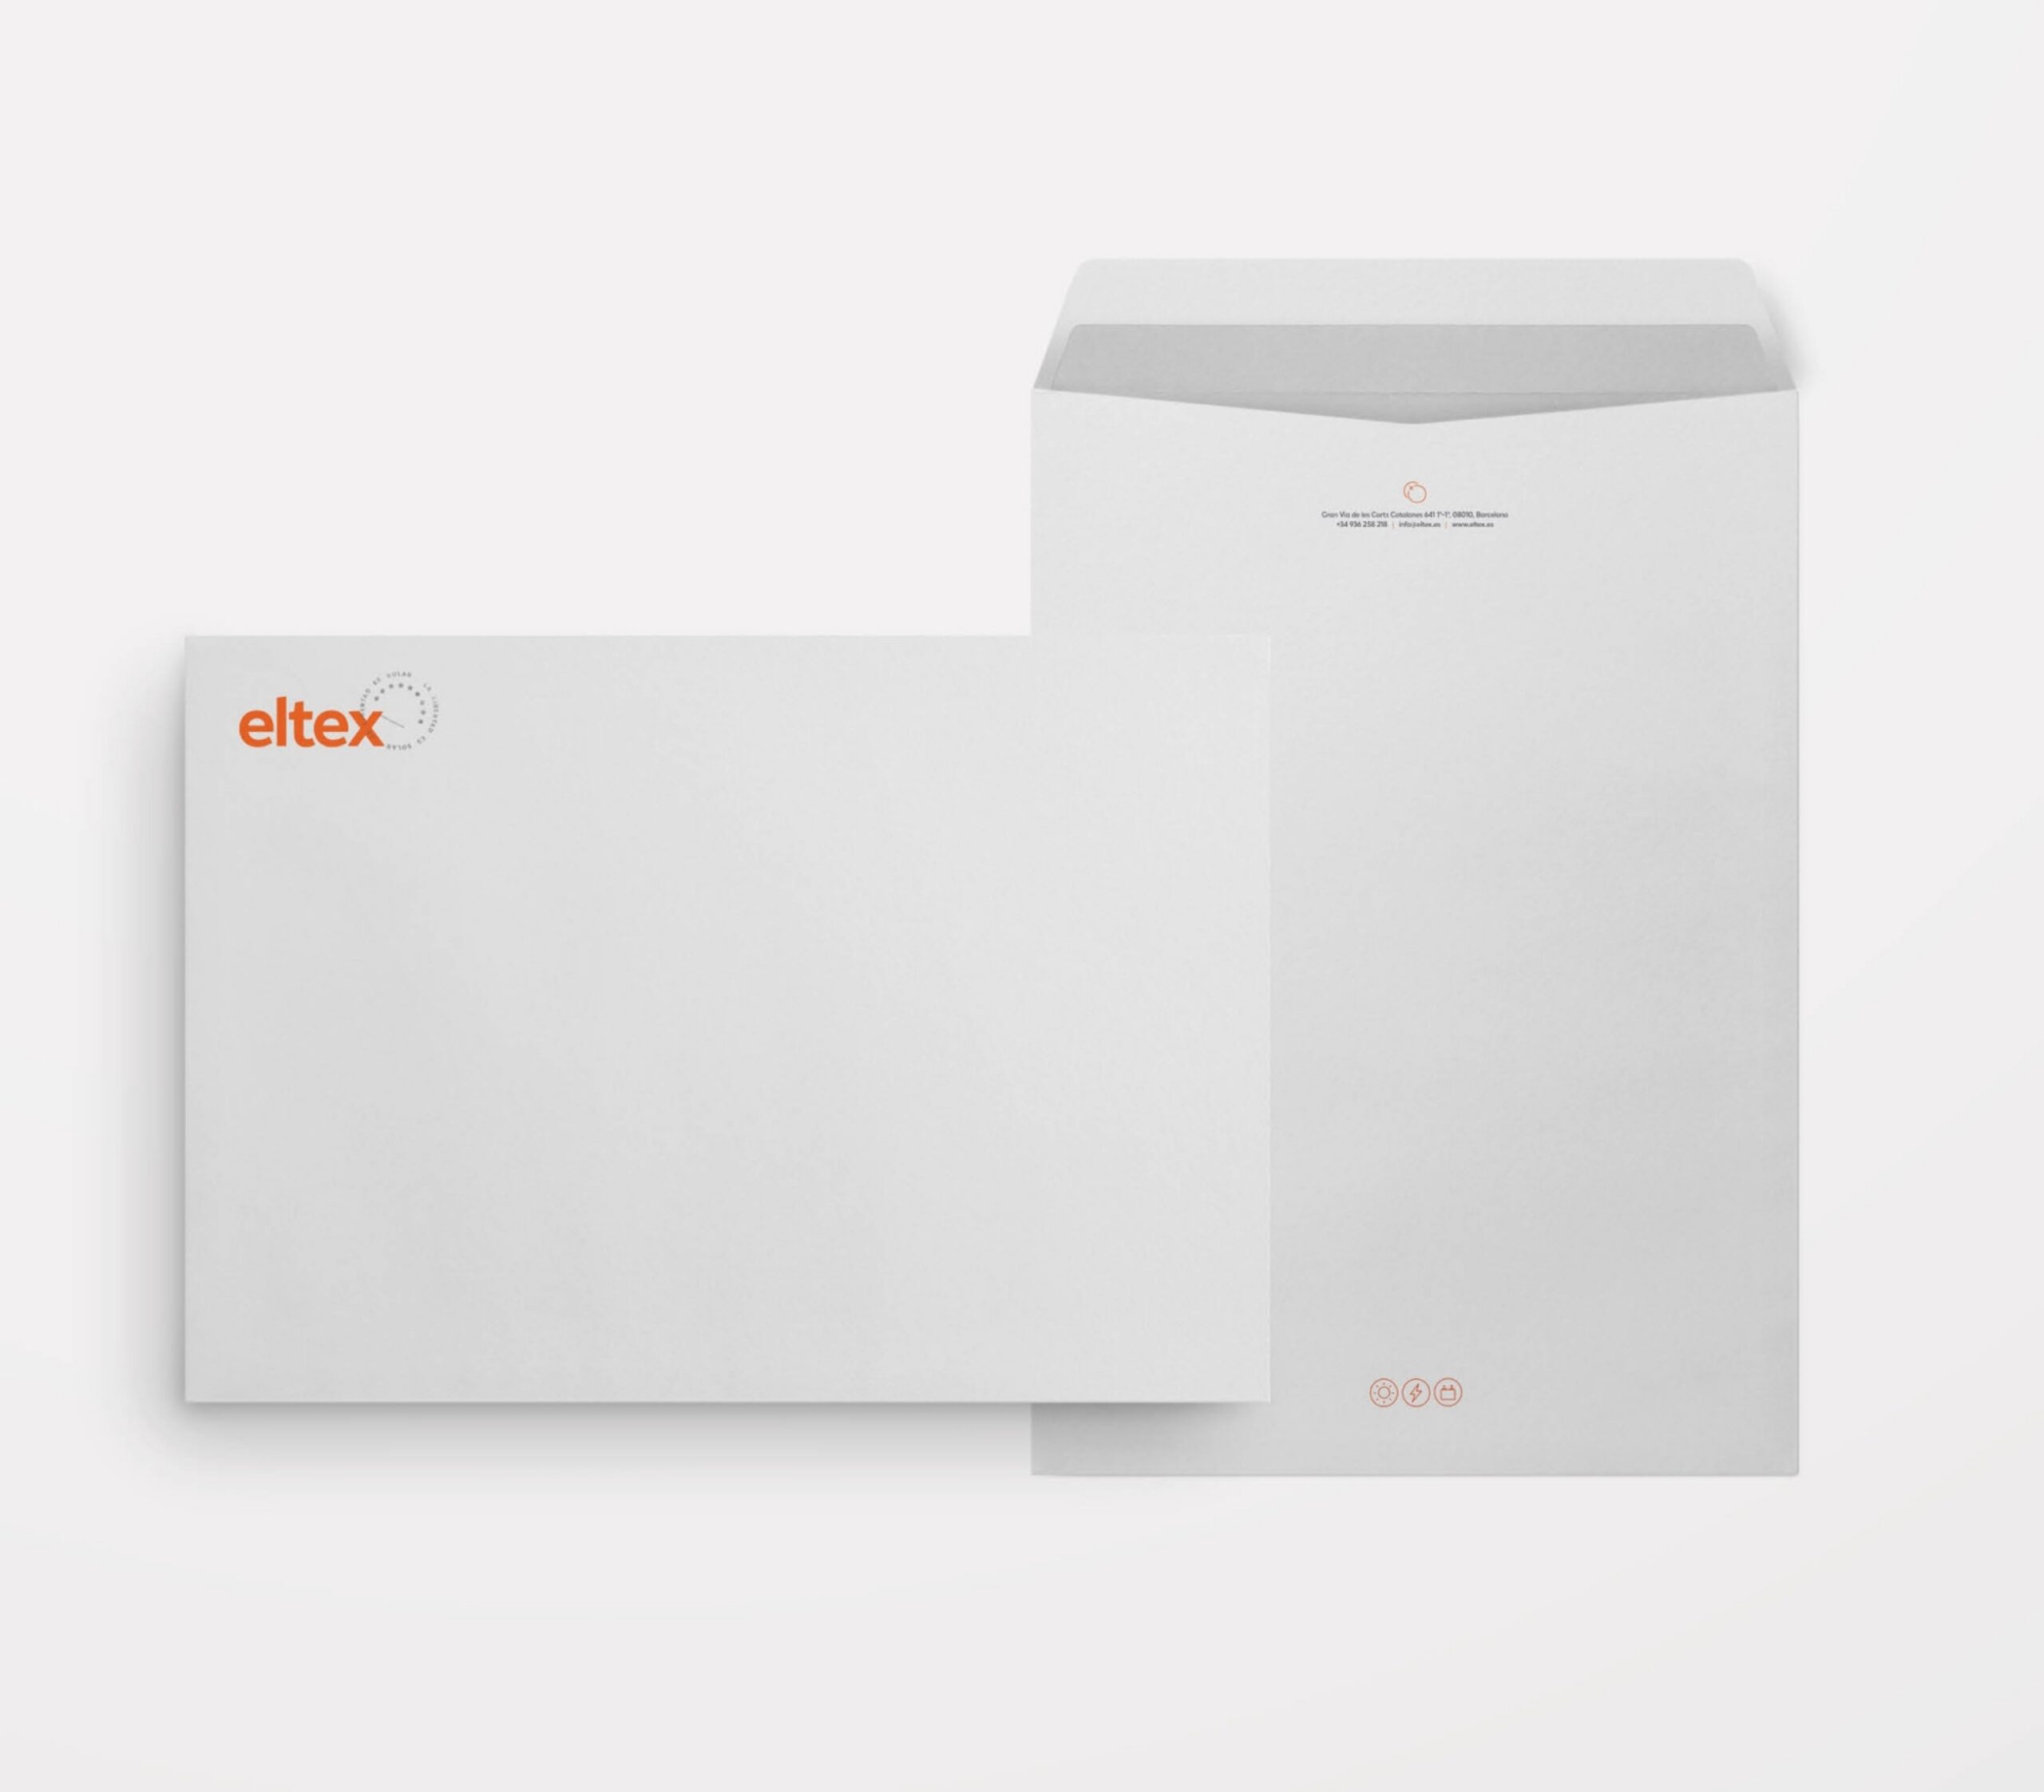 ELTEX Concept WEB 01 011 1804x0